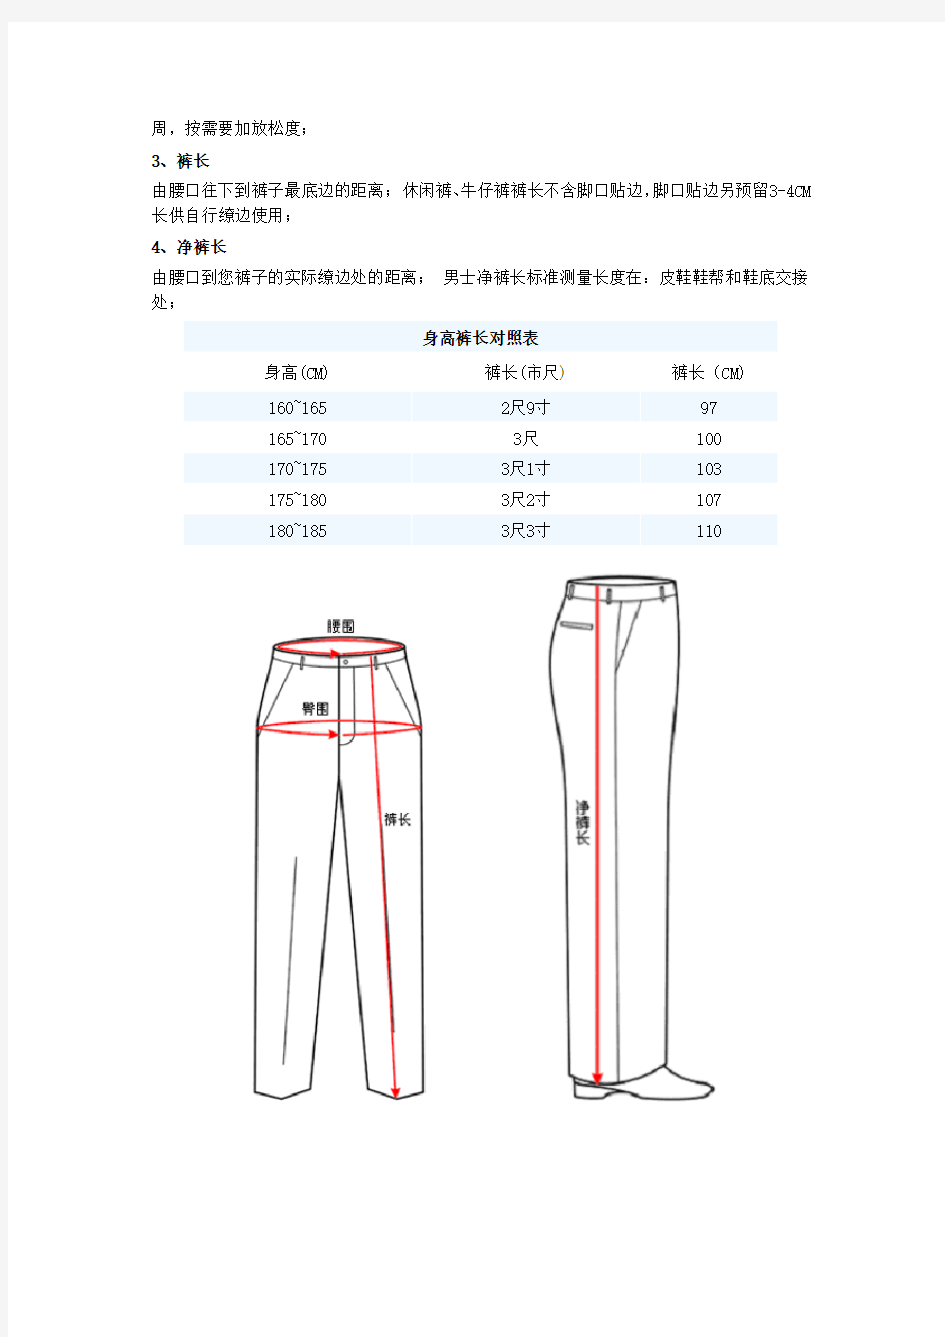 裤子尺寸对照表,衣服尺寸对照表,服装尺寸对照表 - 尺码对照表